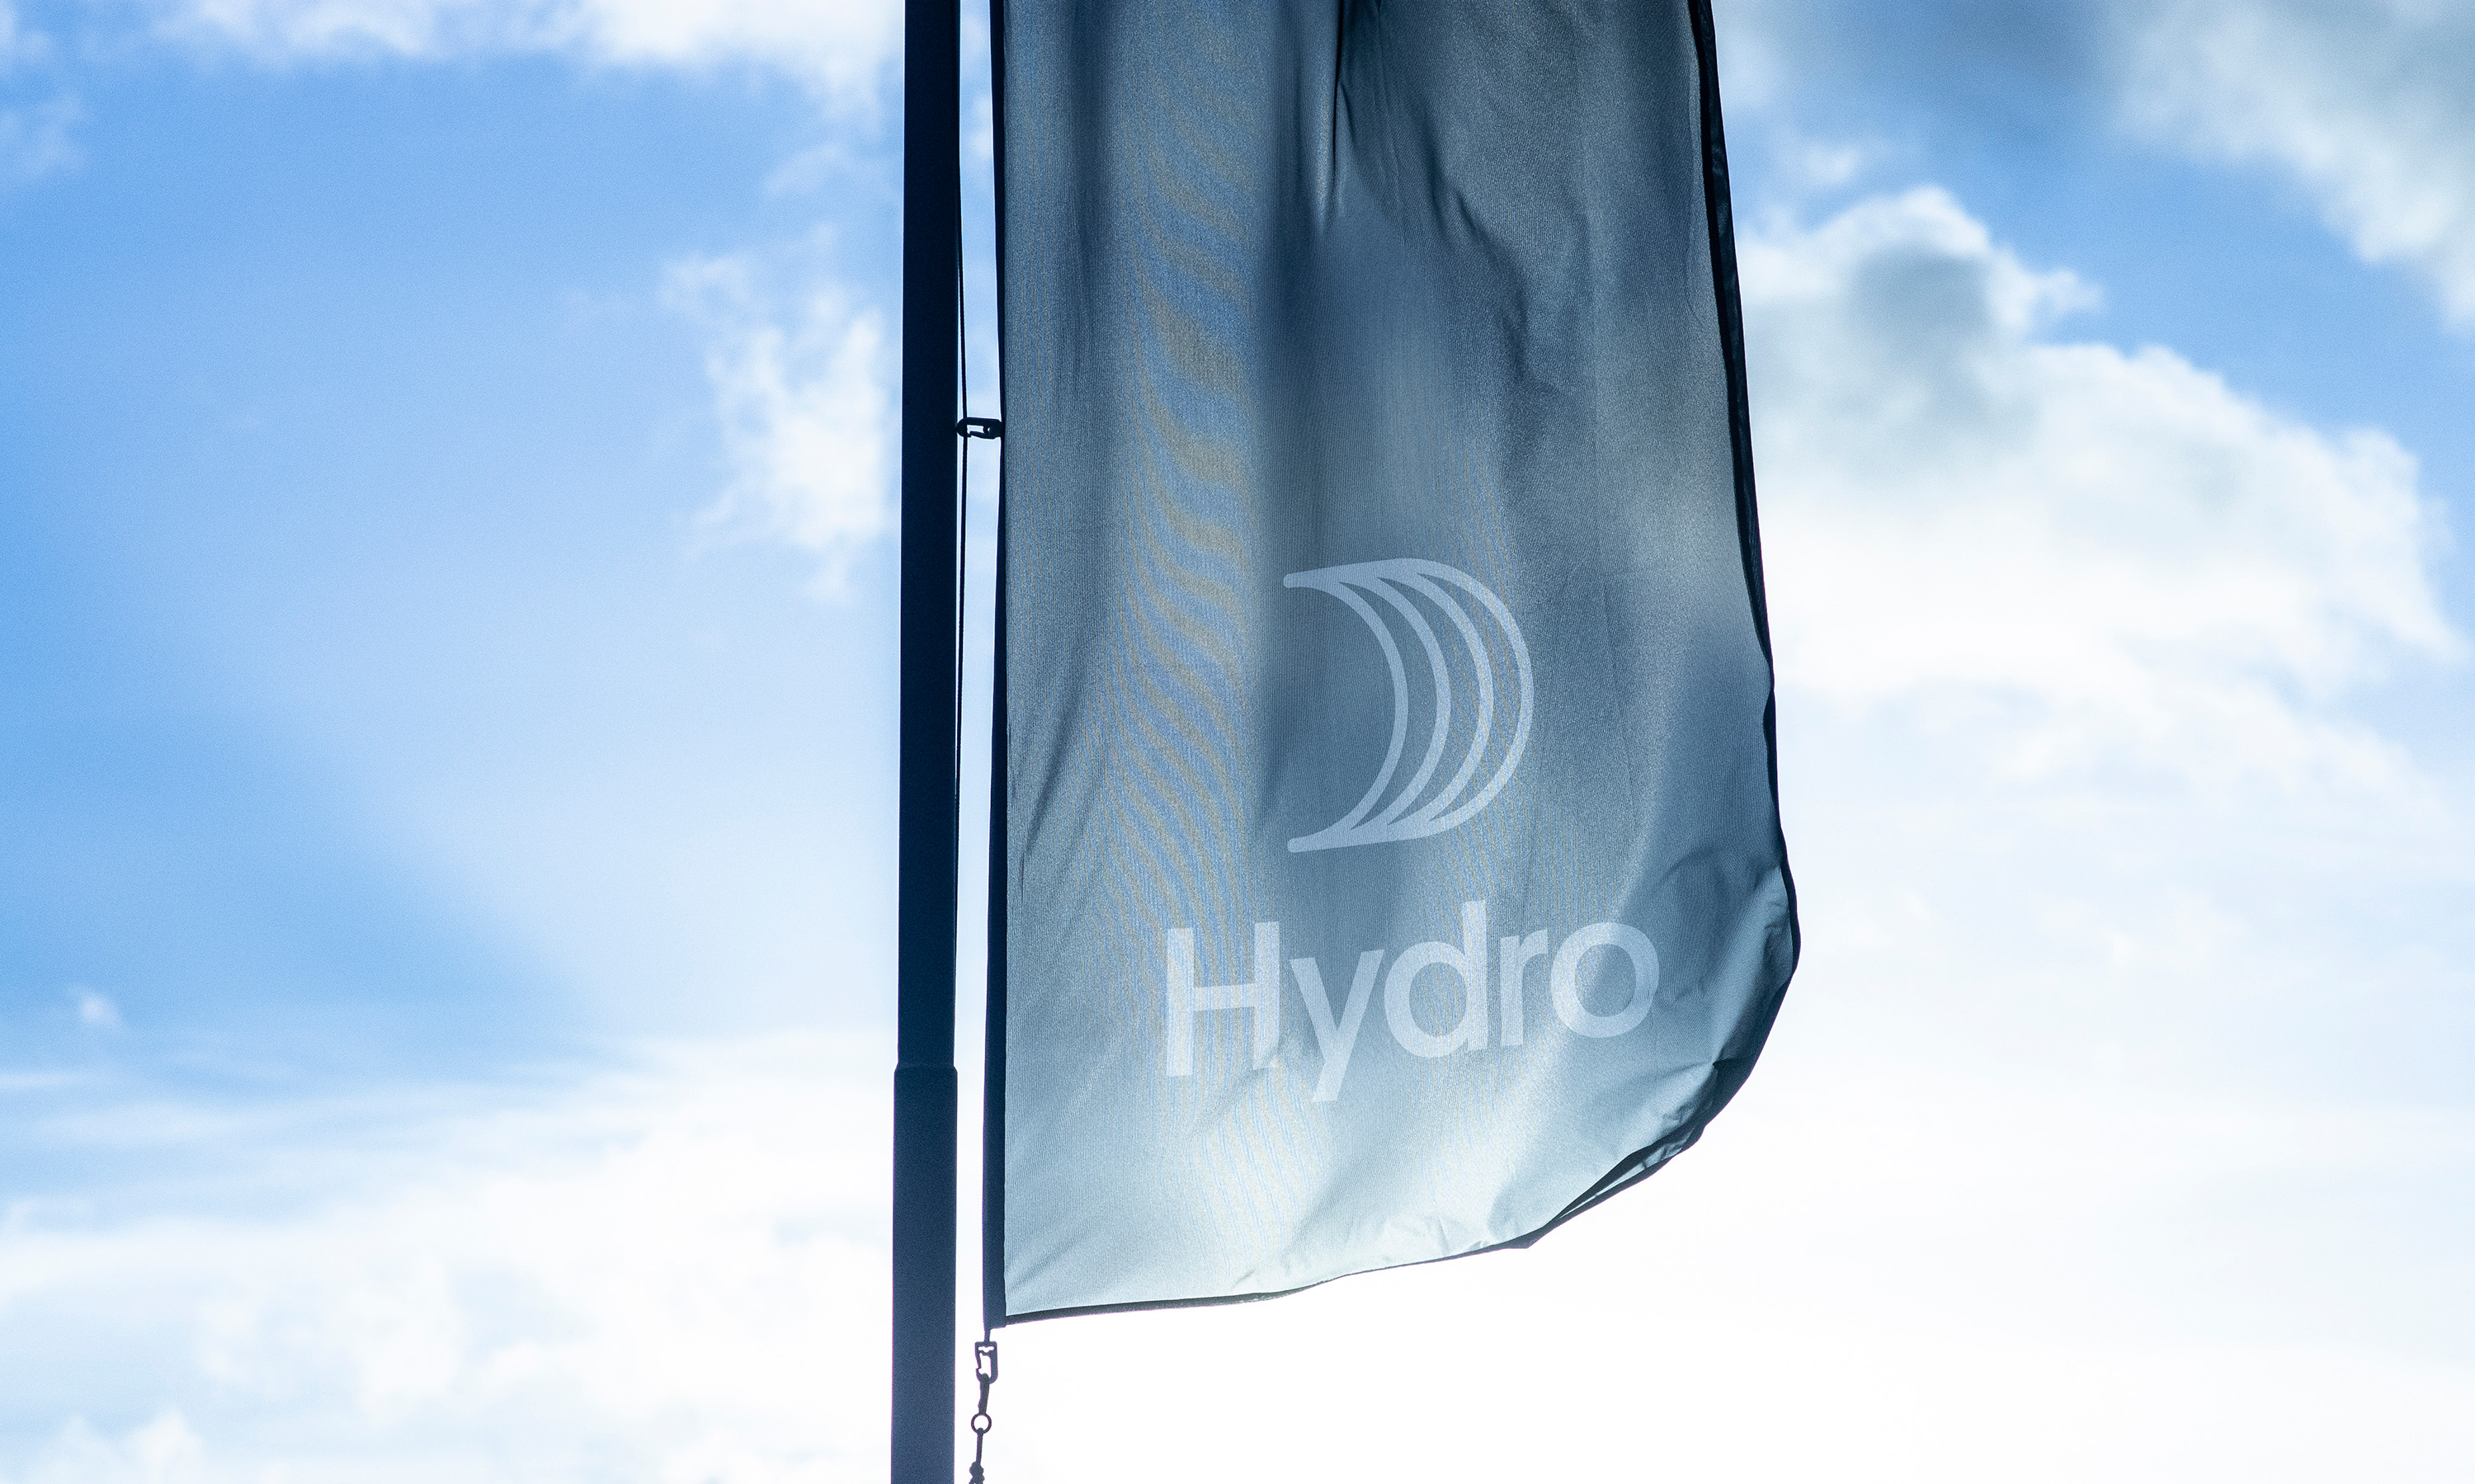 Les valeurs du groupe Hydro